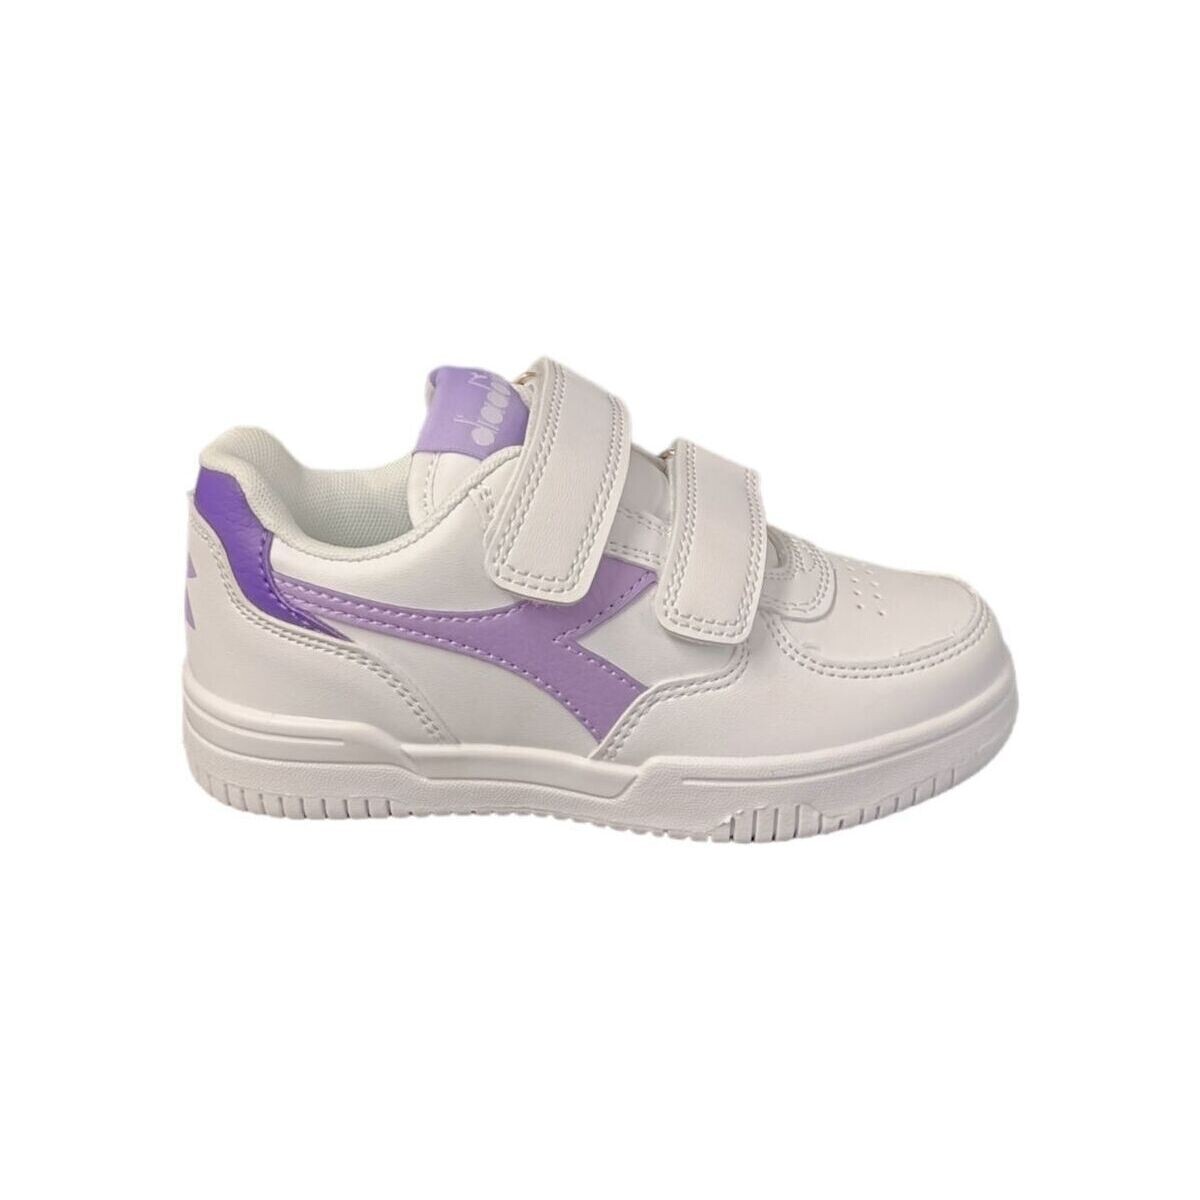 Schoenen Kinderen Sneakers Diadora 101.177721 - RAPTOR LOW PS Multicolour